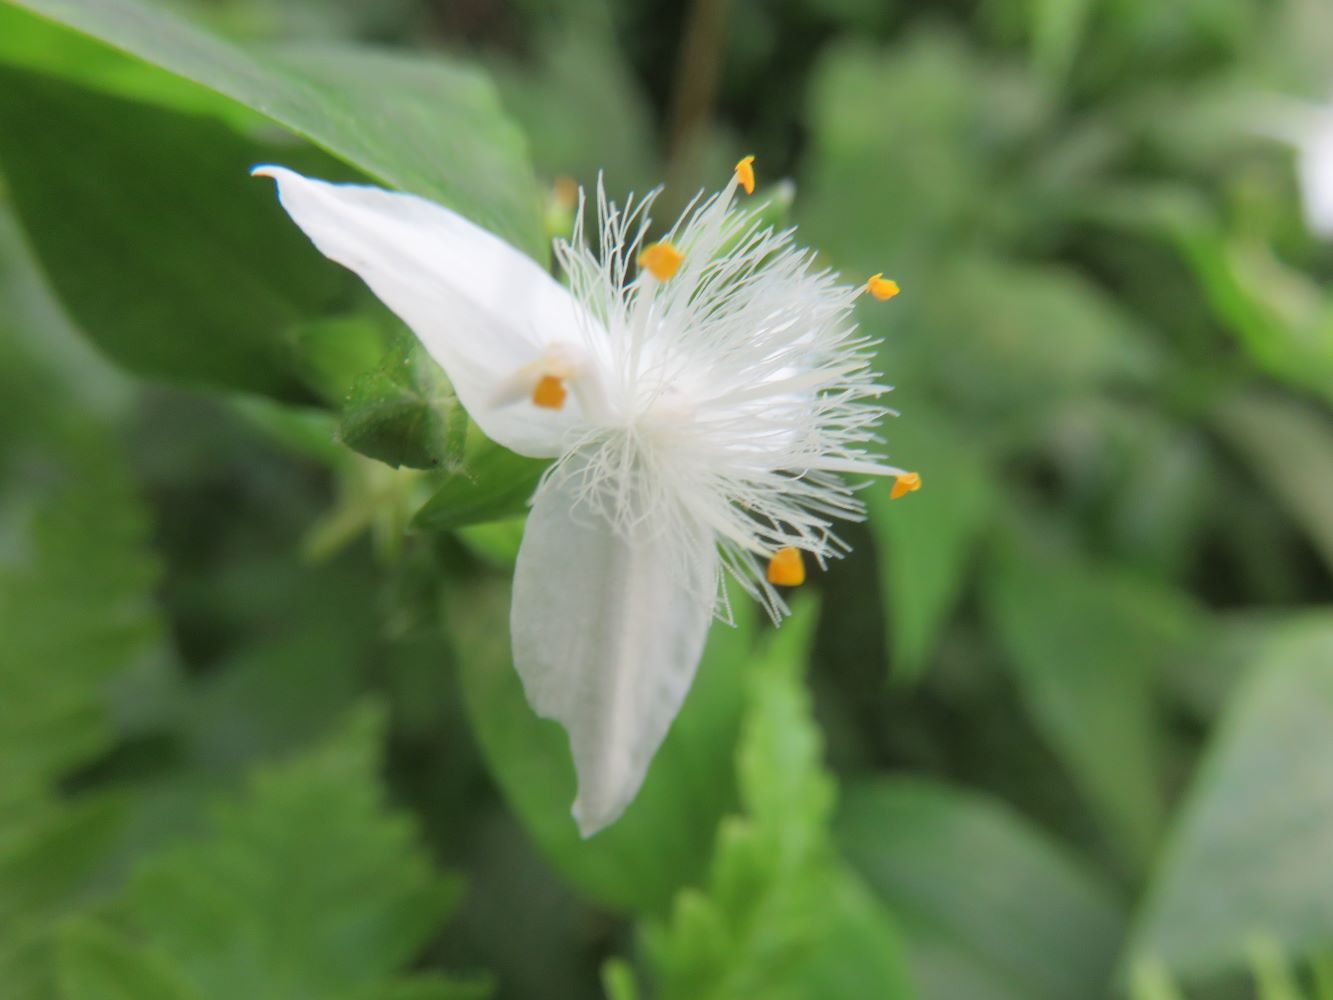 Tradescantia flower